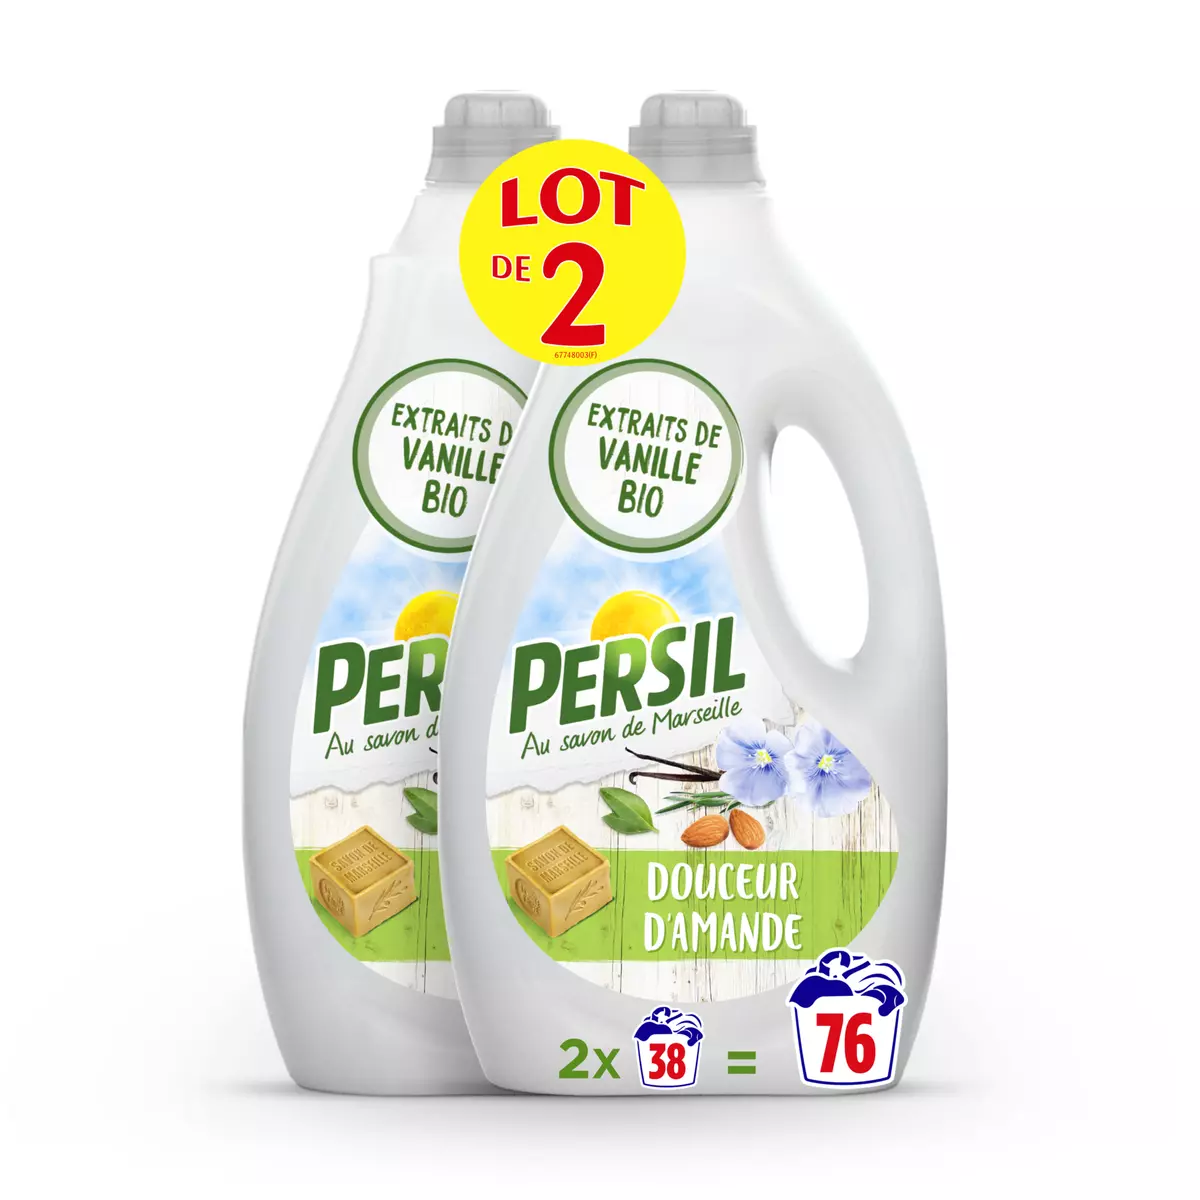 PERSIL Lessive liquide au savon de Marseille douceur d'amande 2x38 lavages 2x1.9l